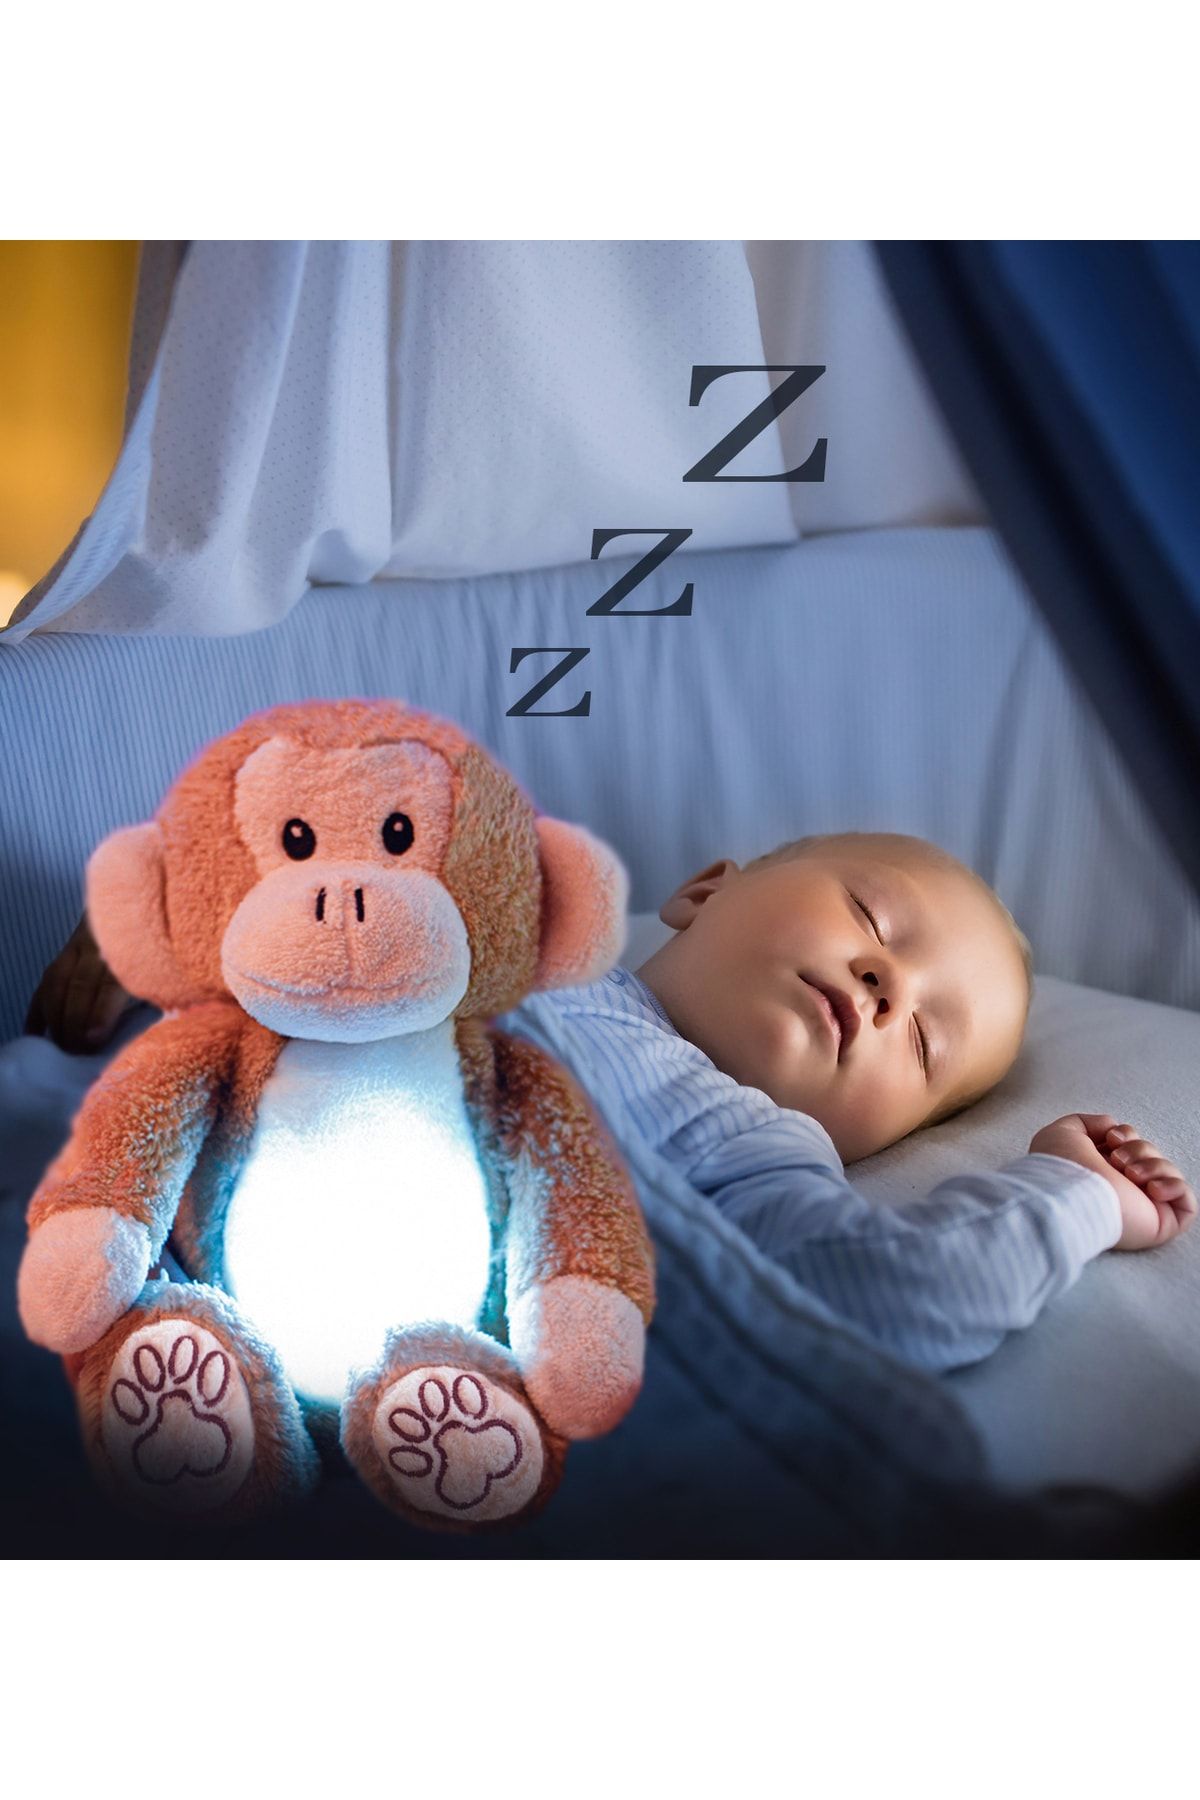 Pandamkee Uykuşşş Akıllı Ağlama Sensörlü Uyku Arkadaşı - Beyaz Gürültülü doli